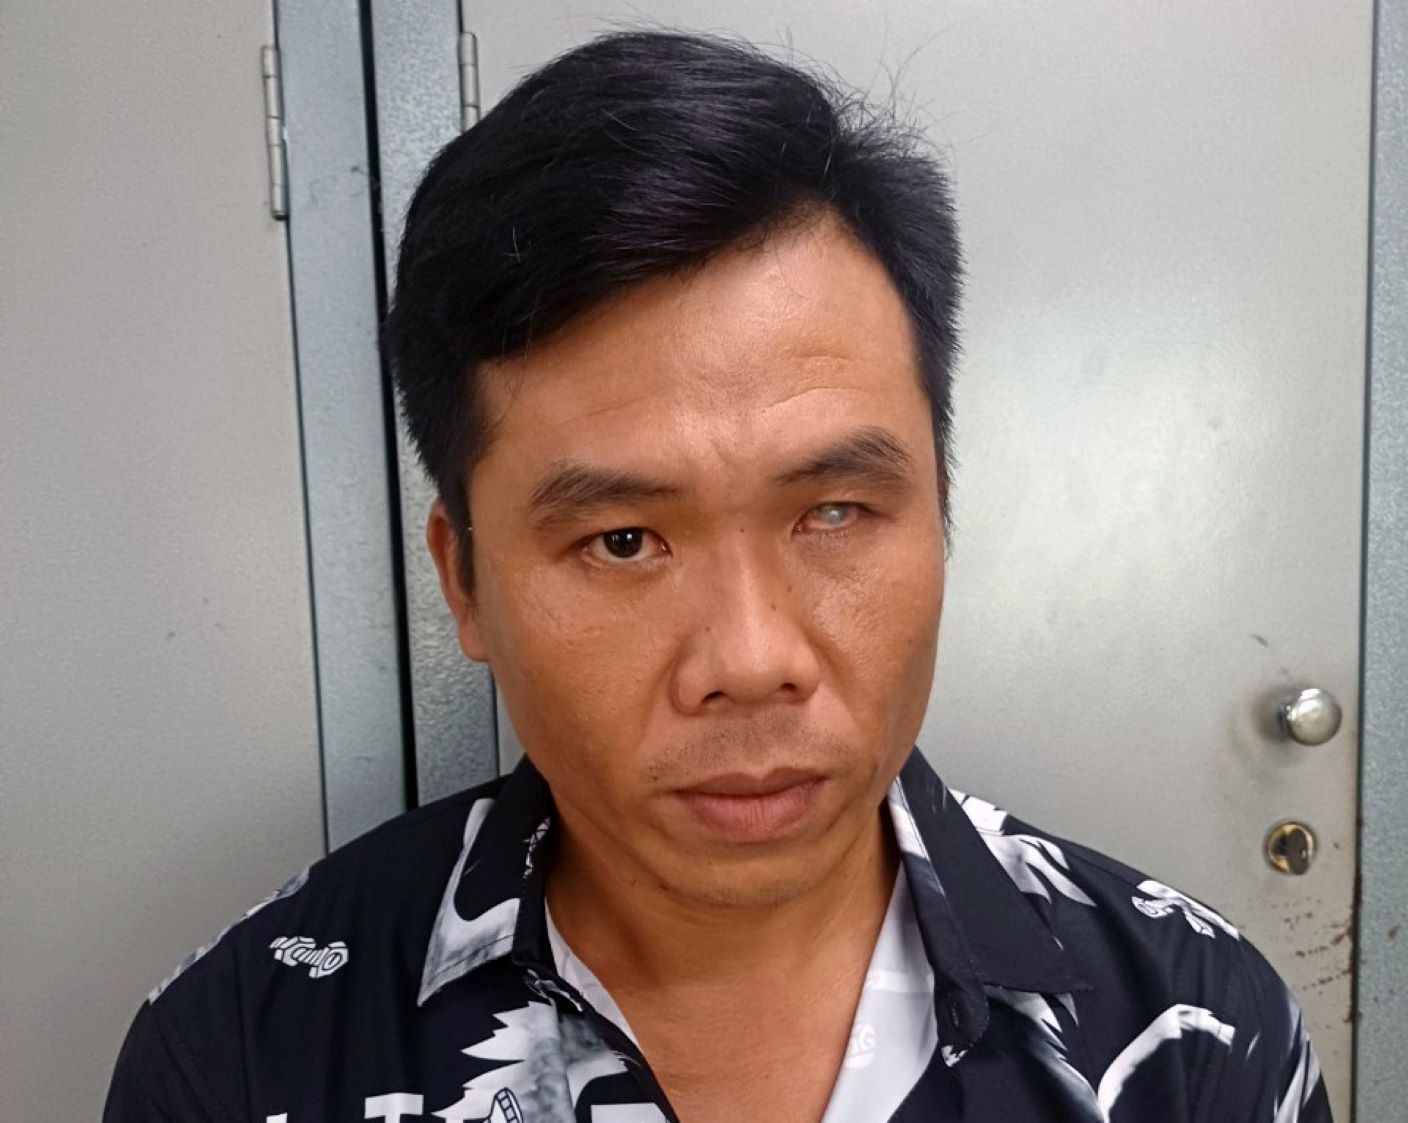 Được sự vận động của cơ quan chức năng và gia đình, đối tượng Nguyễn Phú Hiền đã tự nguyện đầu thú sau thời gian trốn lệnh truy nã. Ảnh: Nghiêm Túc